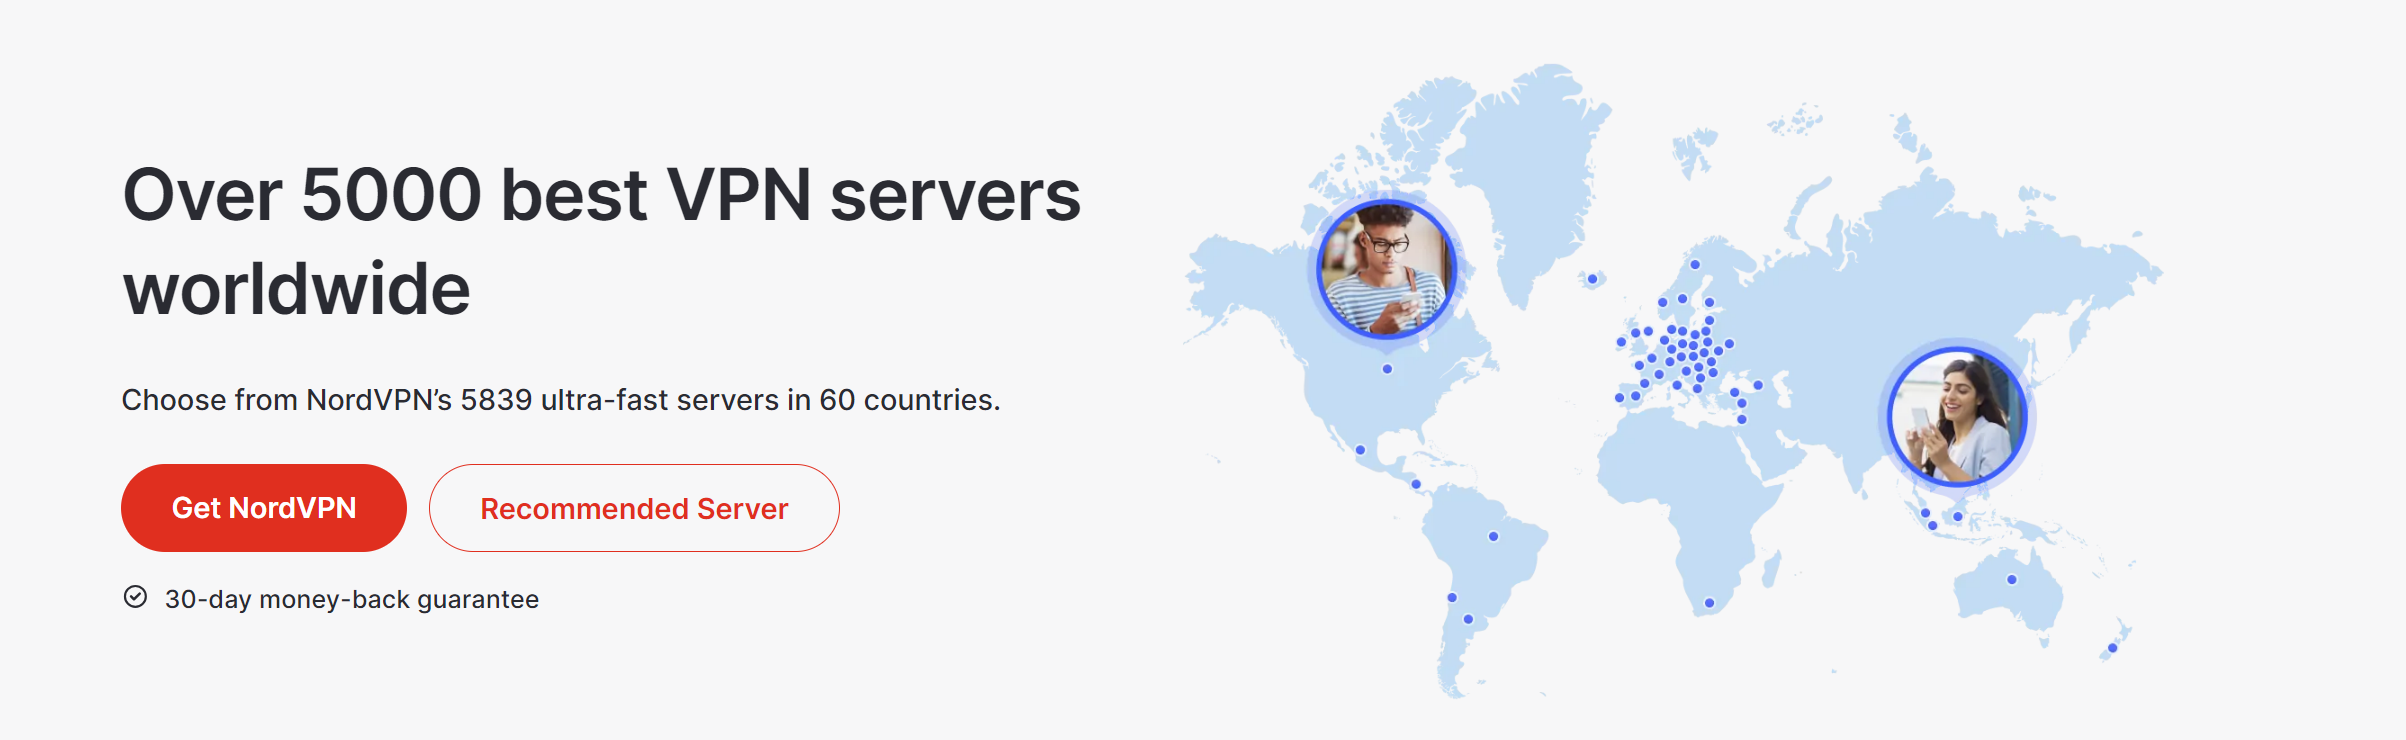 Best VPN servers Worldwide